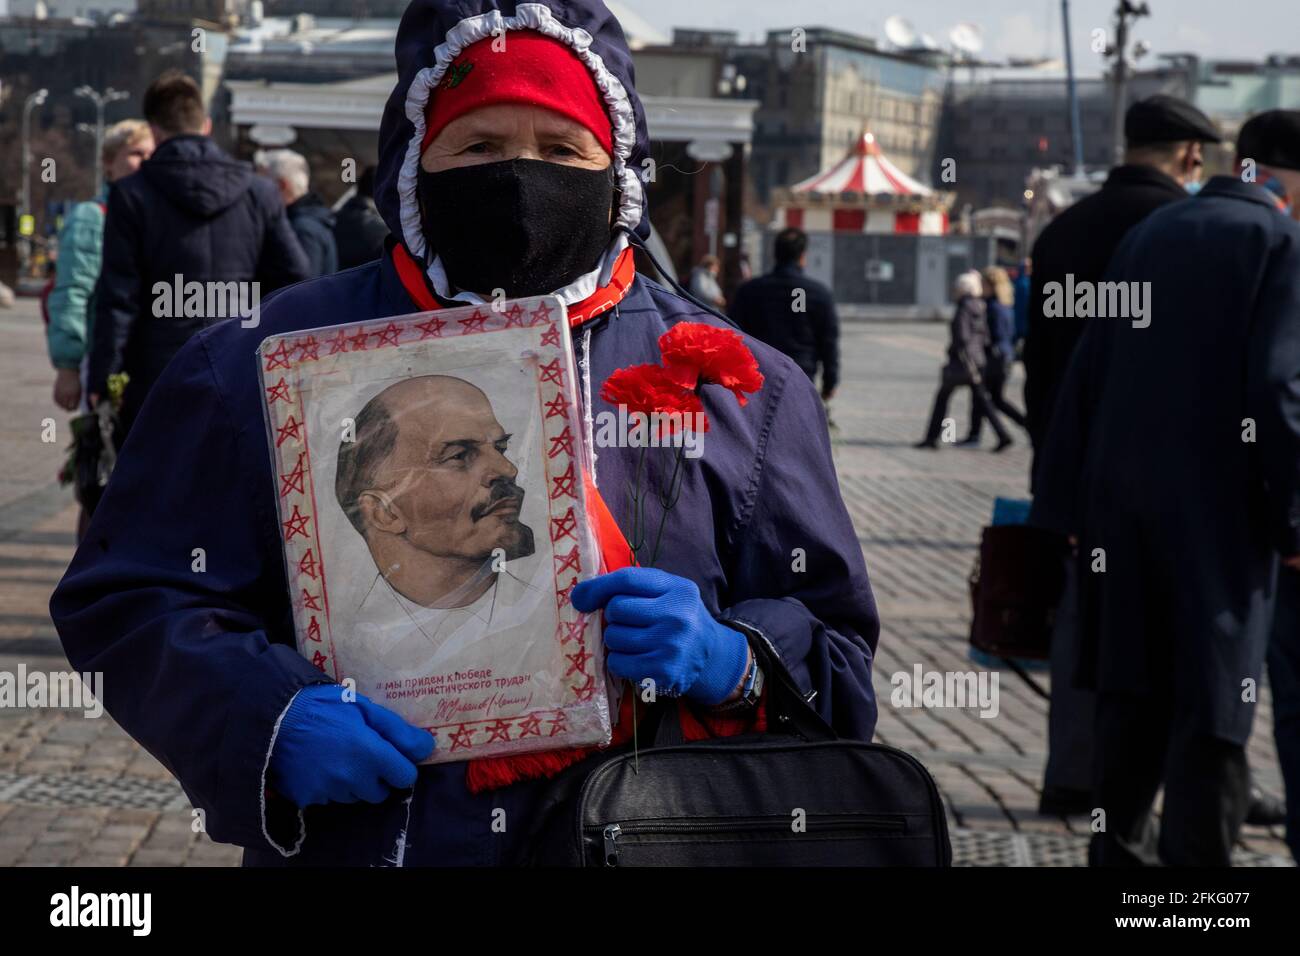 Moskau, Russland. Am 22. April 2021 besuchen russische kommunistische Anhänger das Mausoleum des sowjetischen Gründers Wladimir Lenin anlässlich des 151. Jahrestages seiner Geburt auf dem Roten Platz im Zentrum Moskaus während der neuartigen Coronavirus-Pandemie COVID-19 in Russland Stockfoto